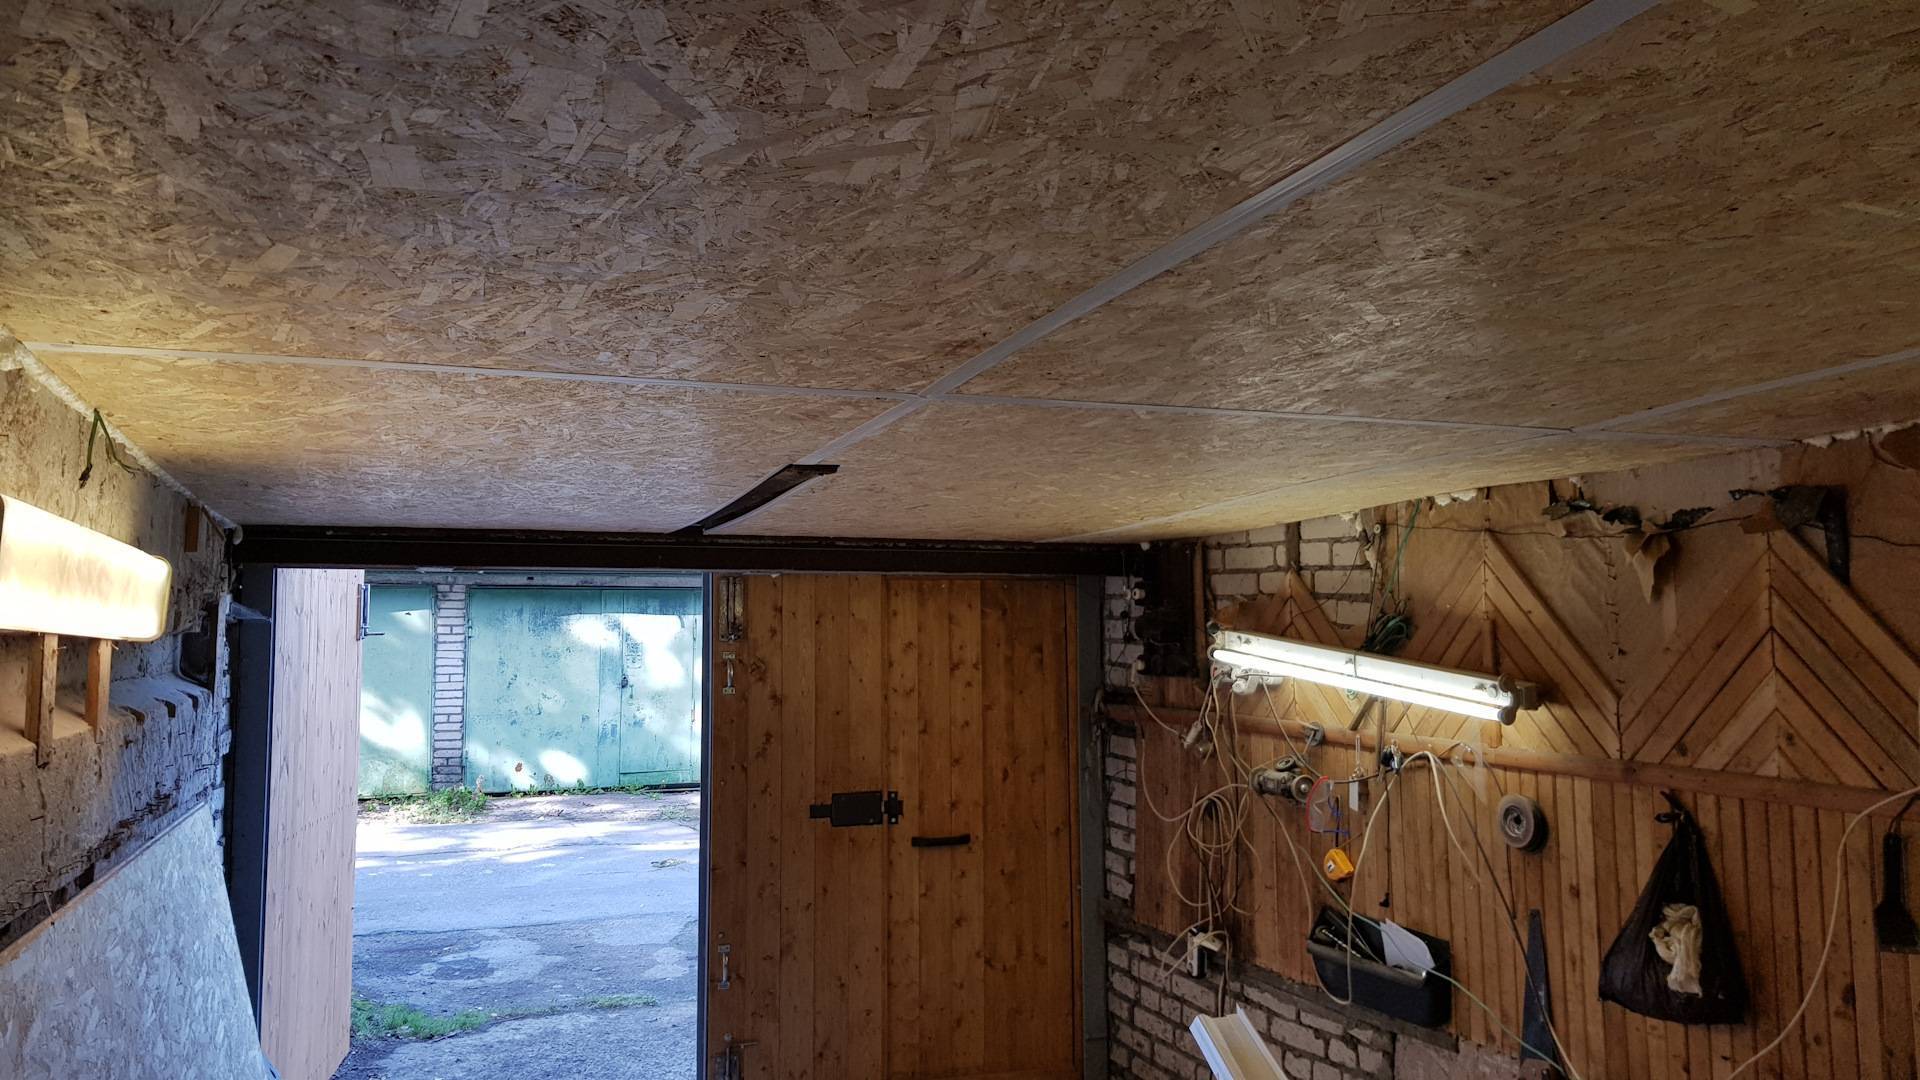 Потолок в гараже: лучшие варианты и инструкции по монтажу!